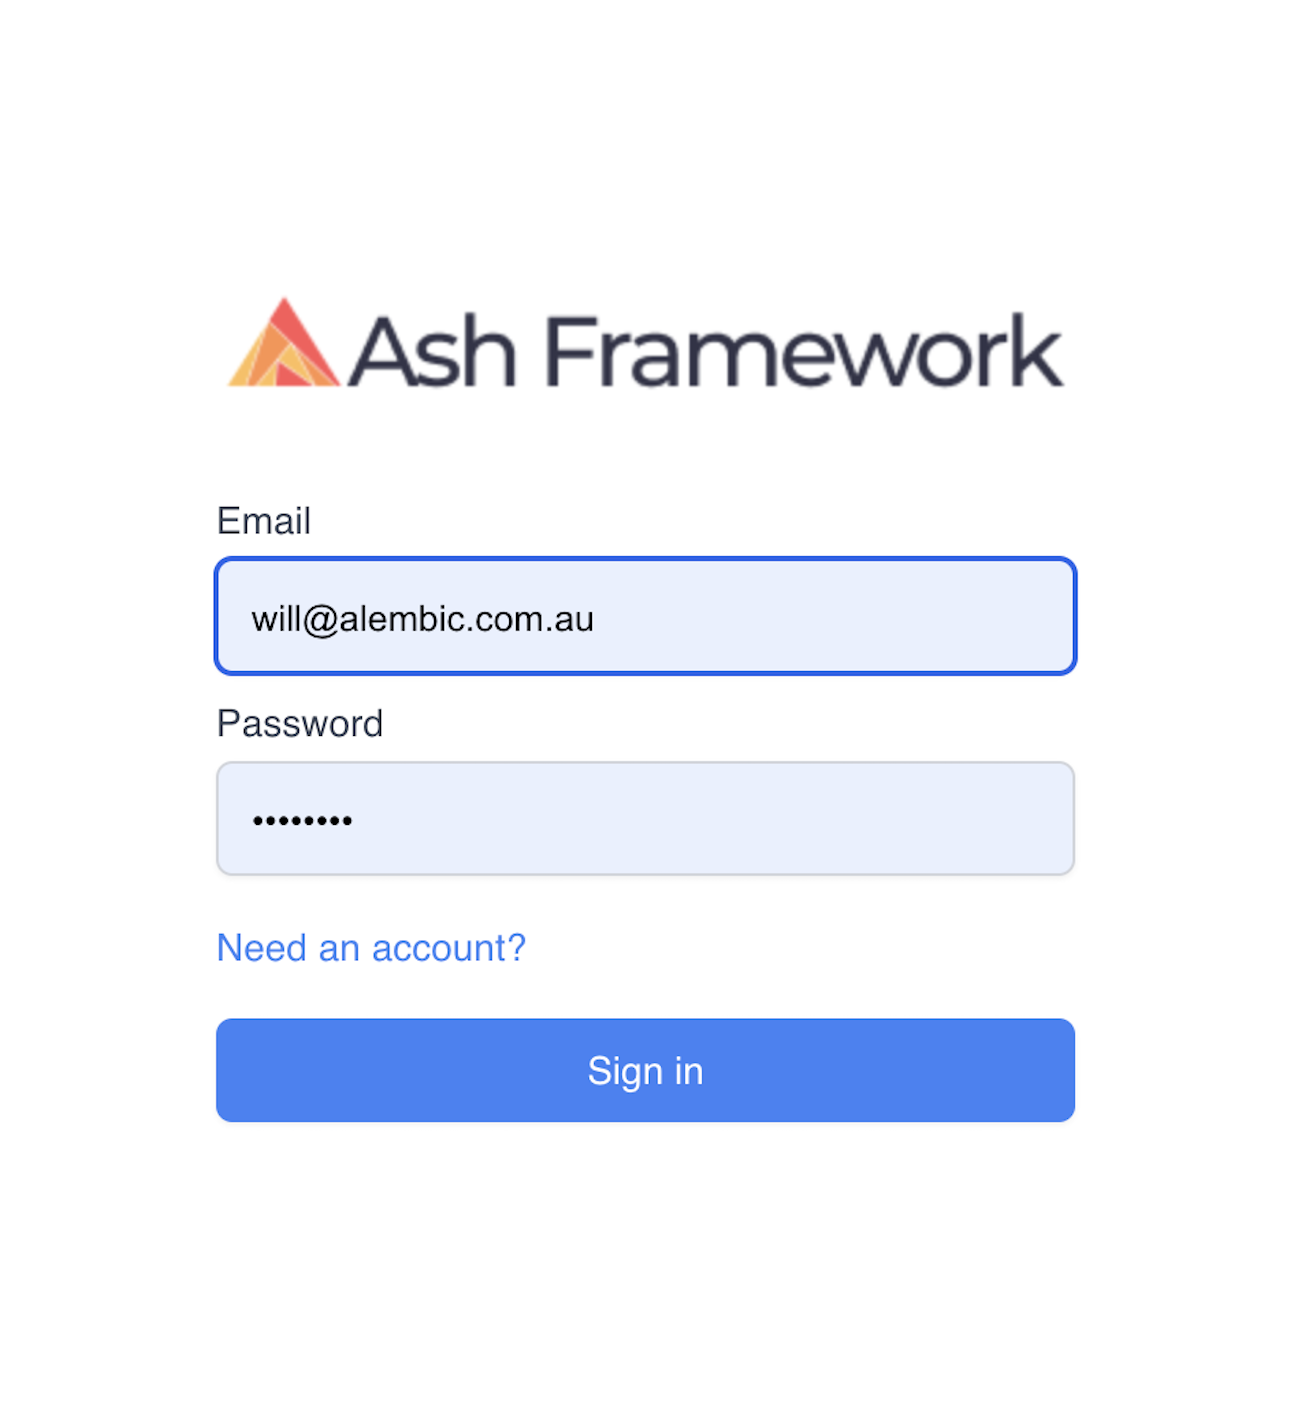 Default UI for Ash Authentication